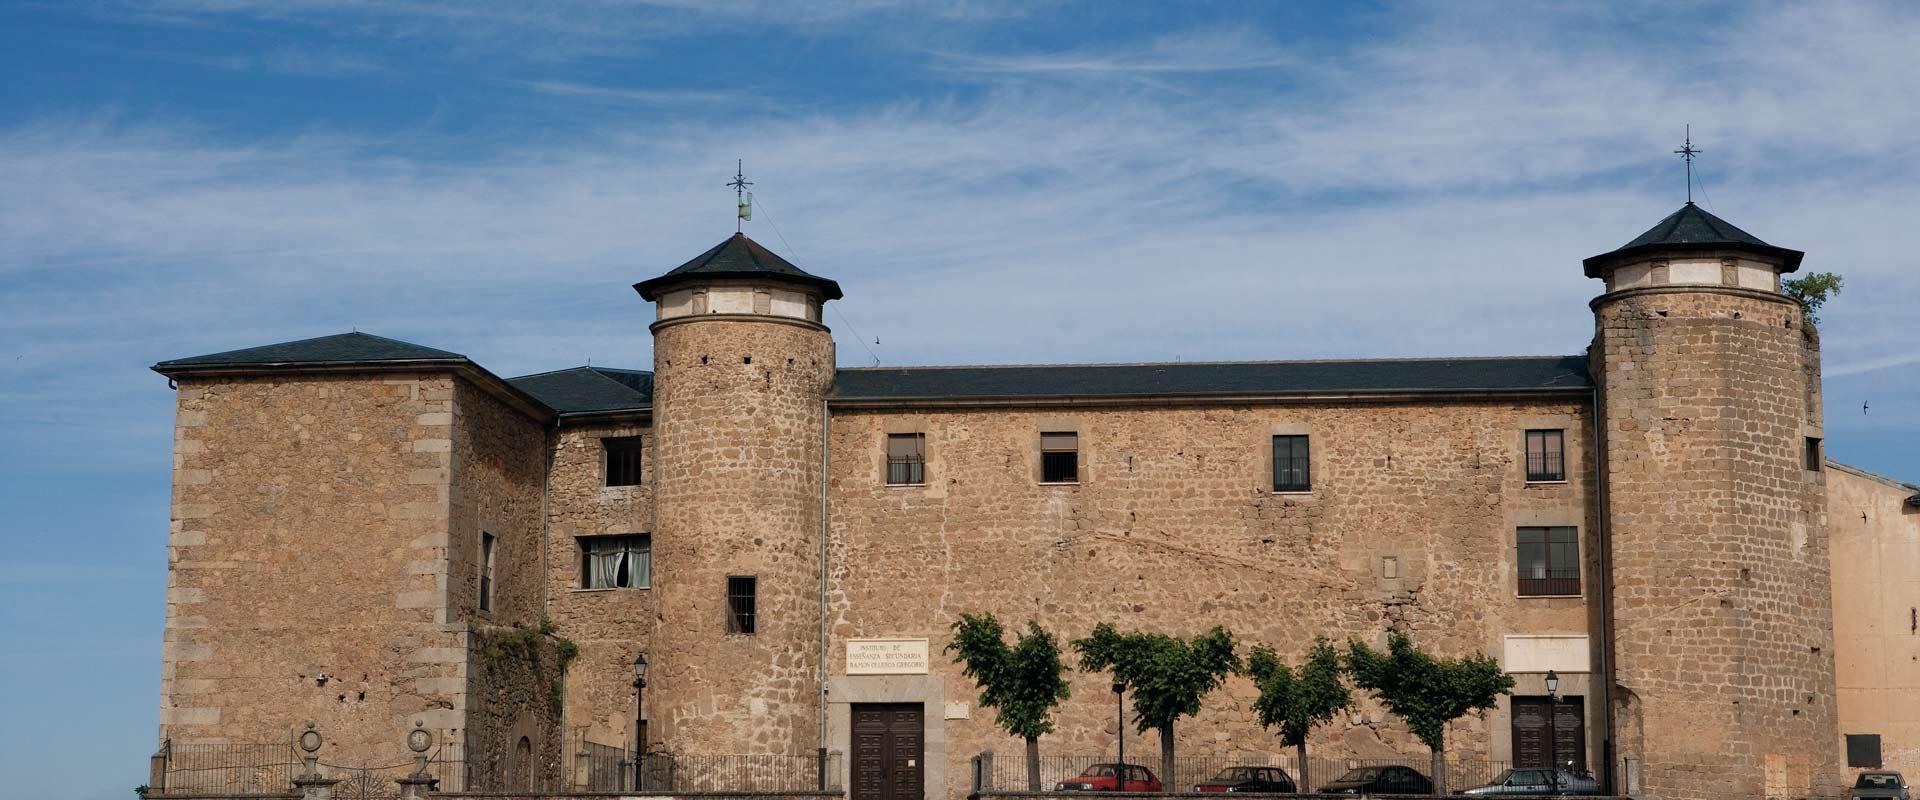 Ducal Palace of Béjar